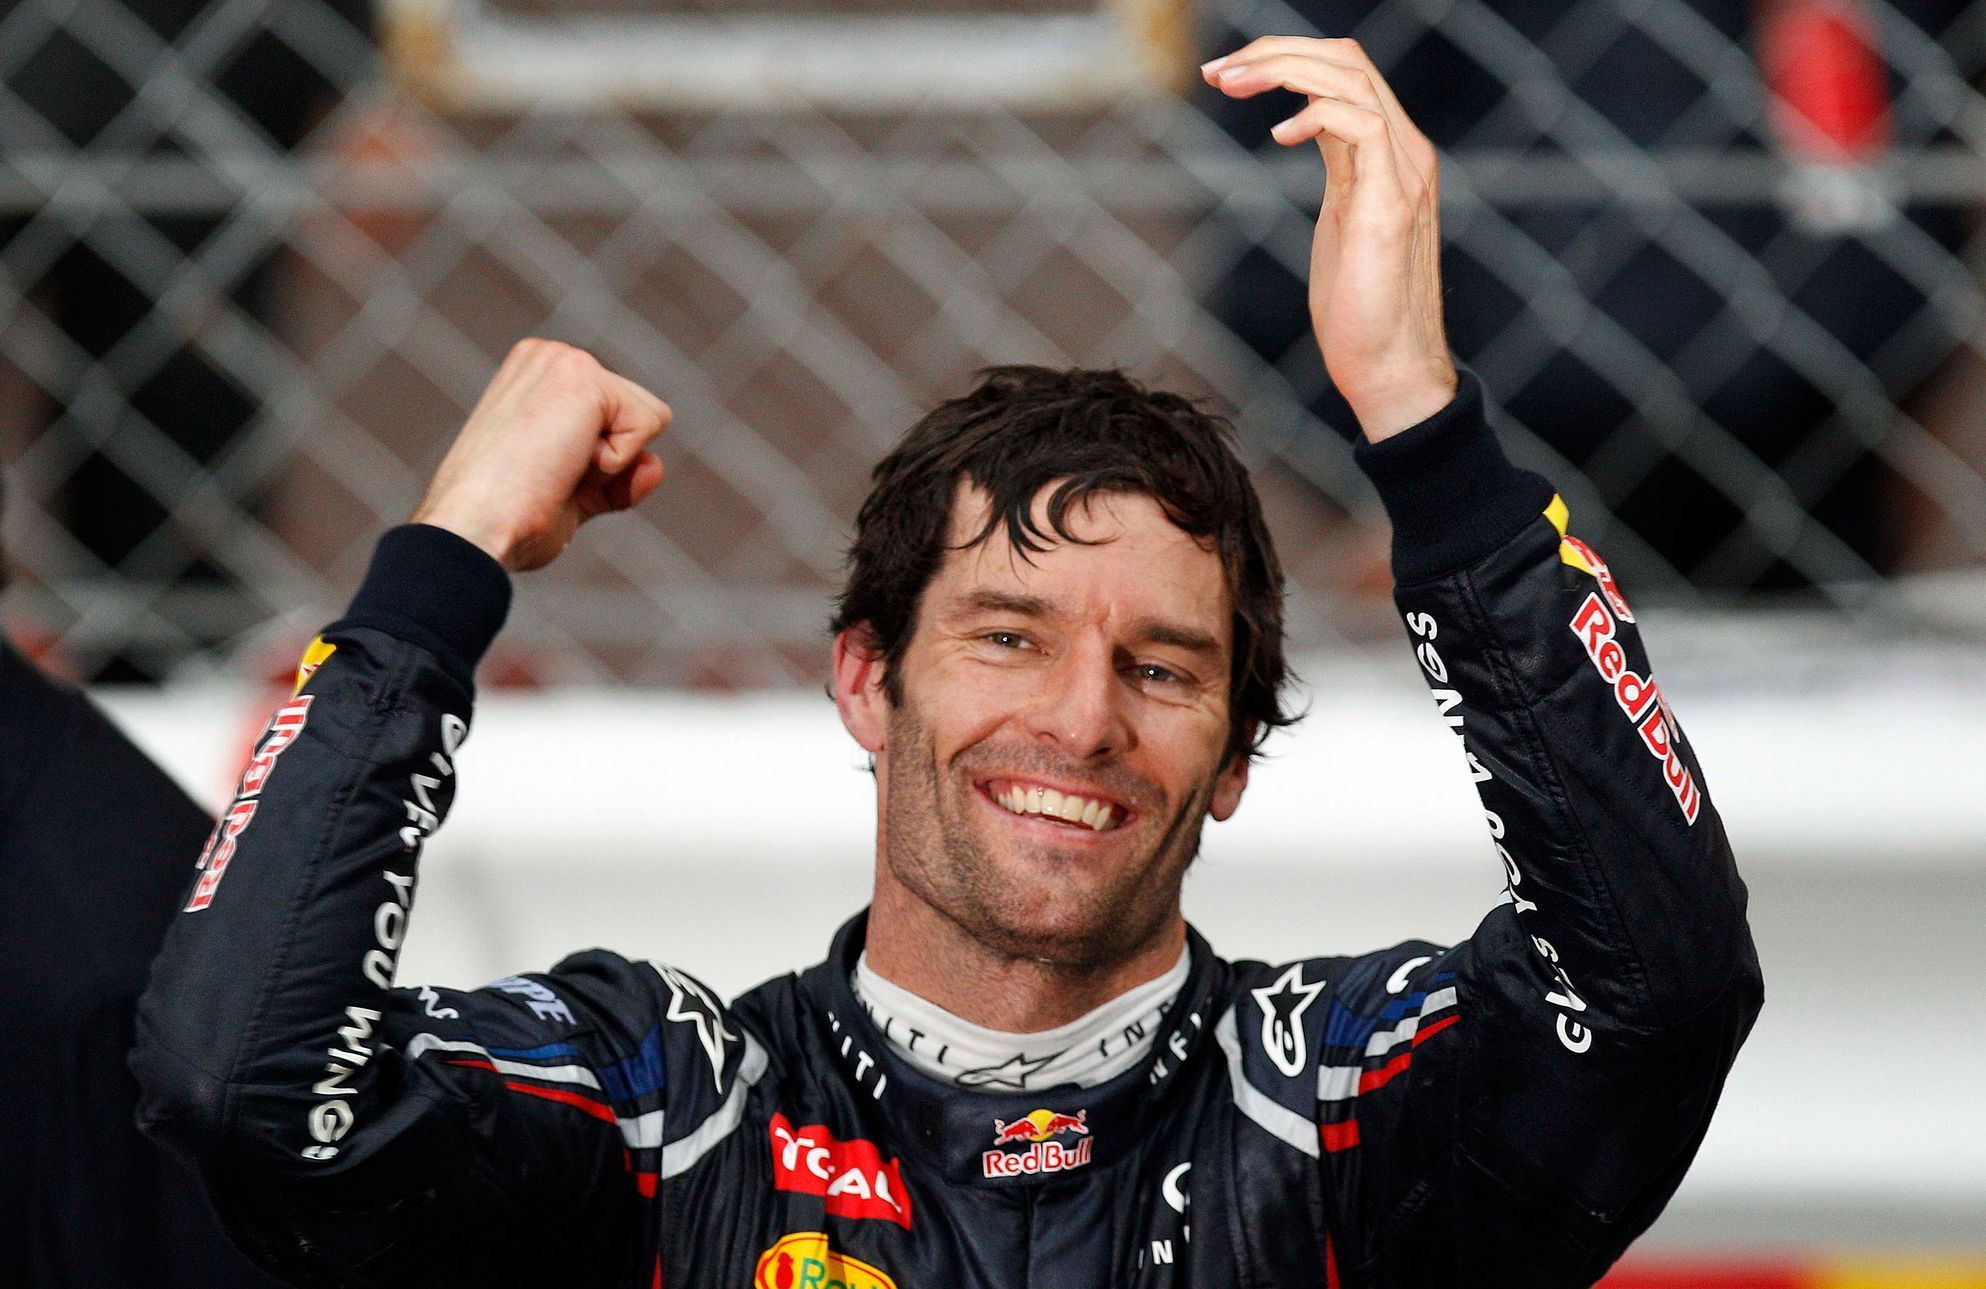 Mark Webber slaví vítězství při Velké ceně Monaka